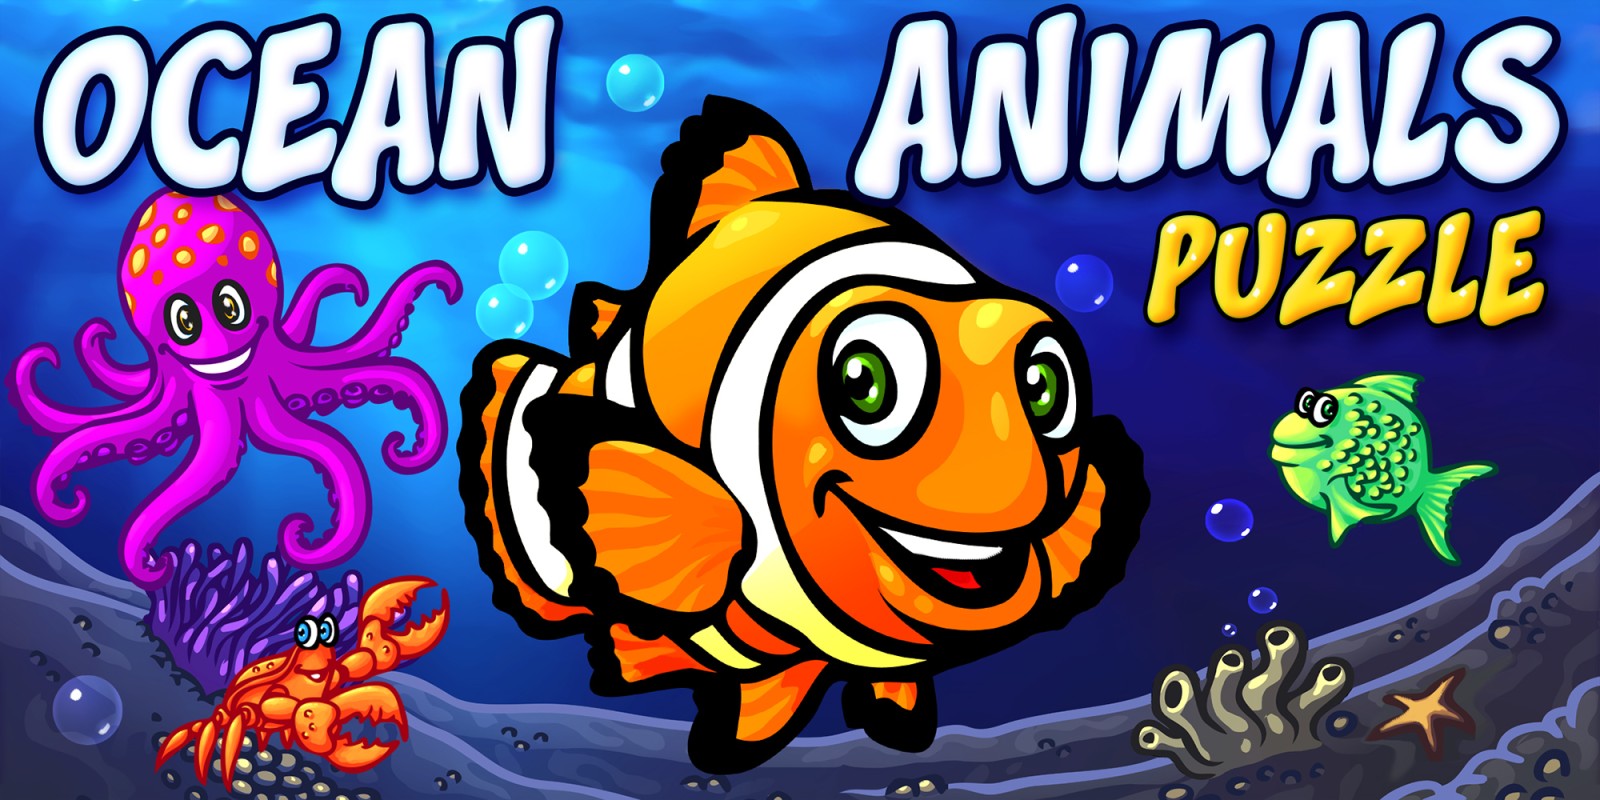 Ocean Animals Puzzle - quebra-cabeças de jogos de aprendizado de animais oceânicos pré-escolares para crianças e bebês